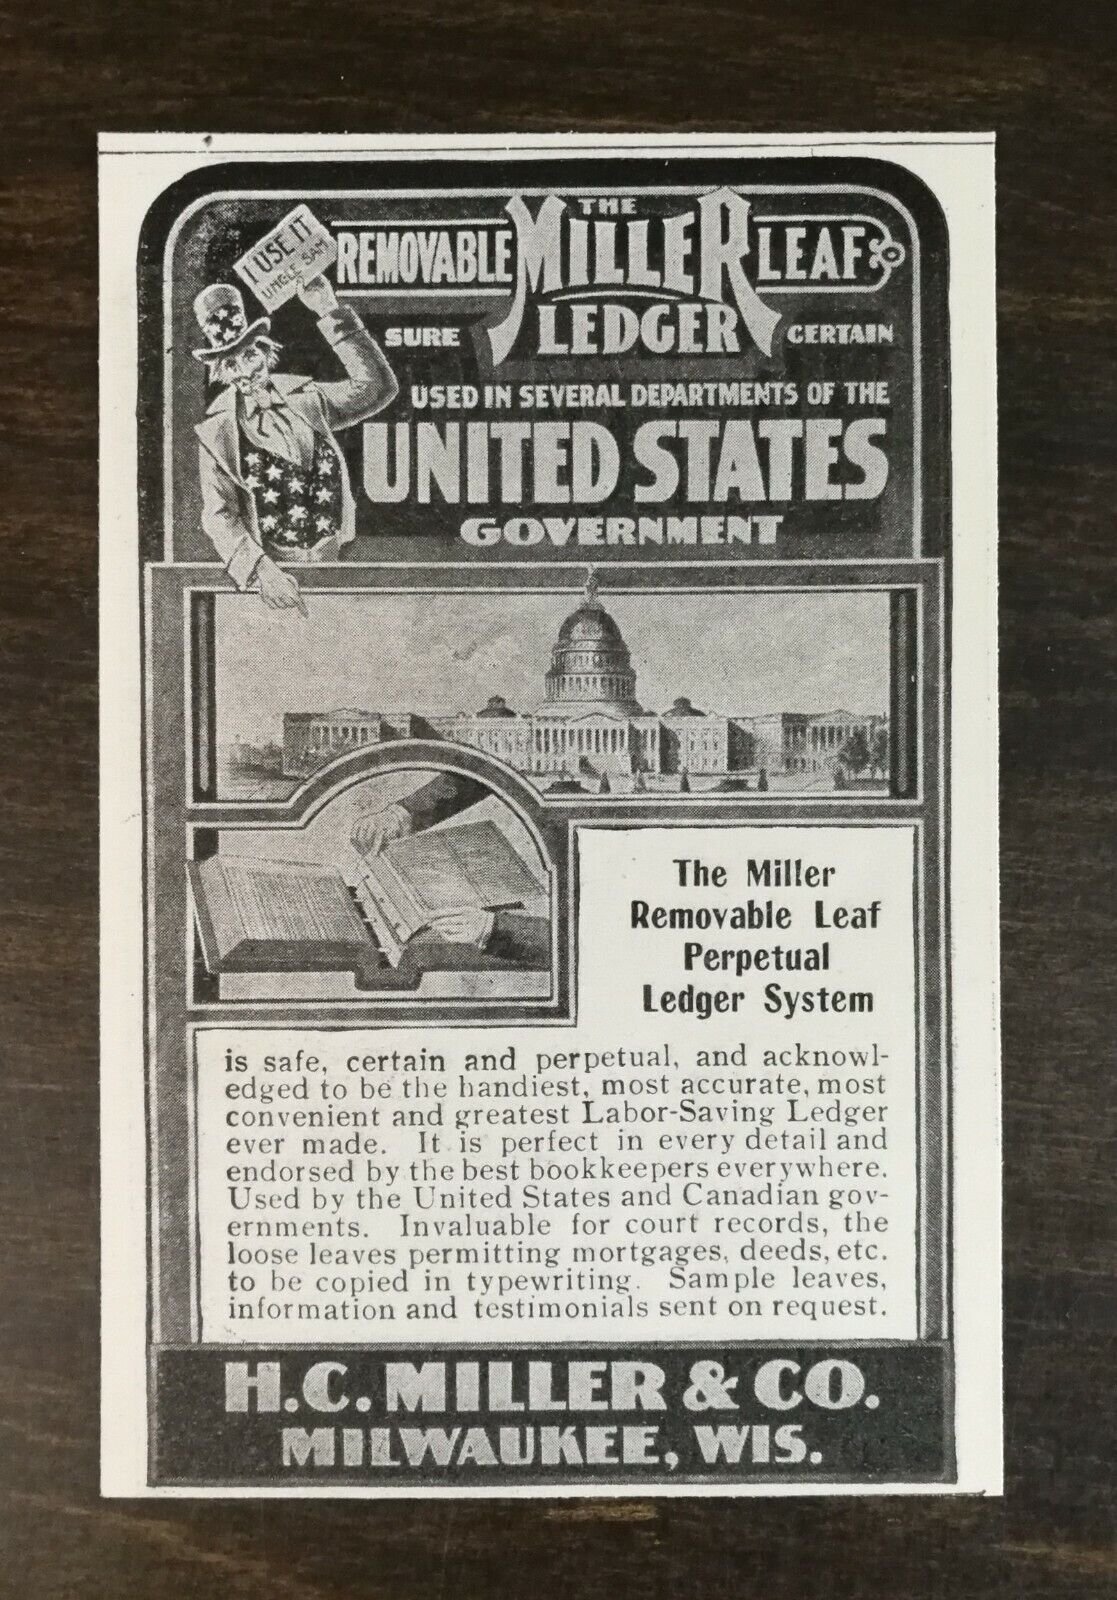 Vintage 1901 The H.C. Miller Removable Leaf Ledger Goverment Original Ad  721